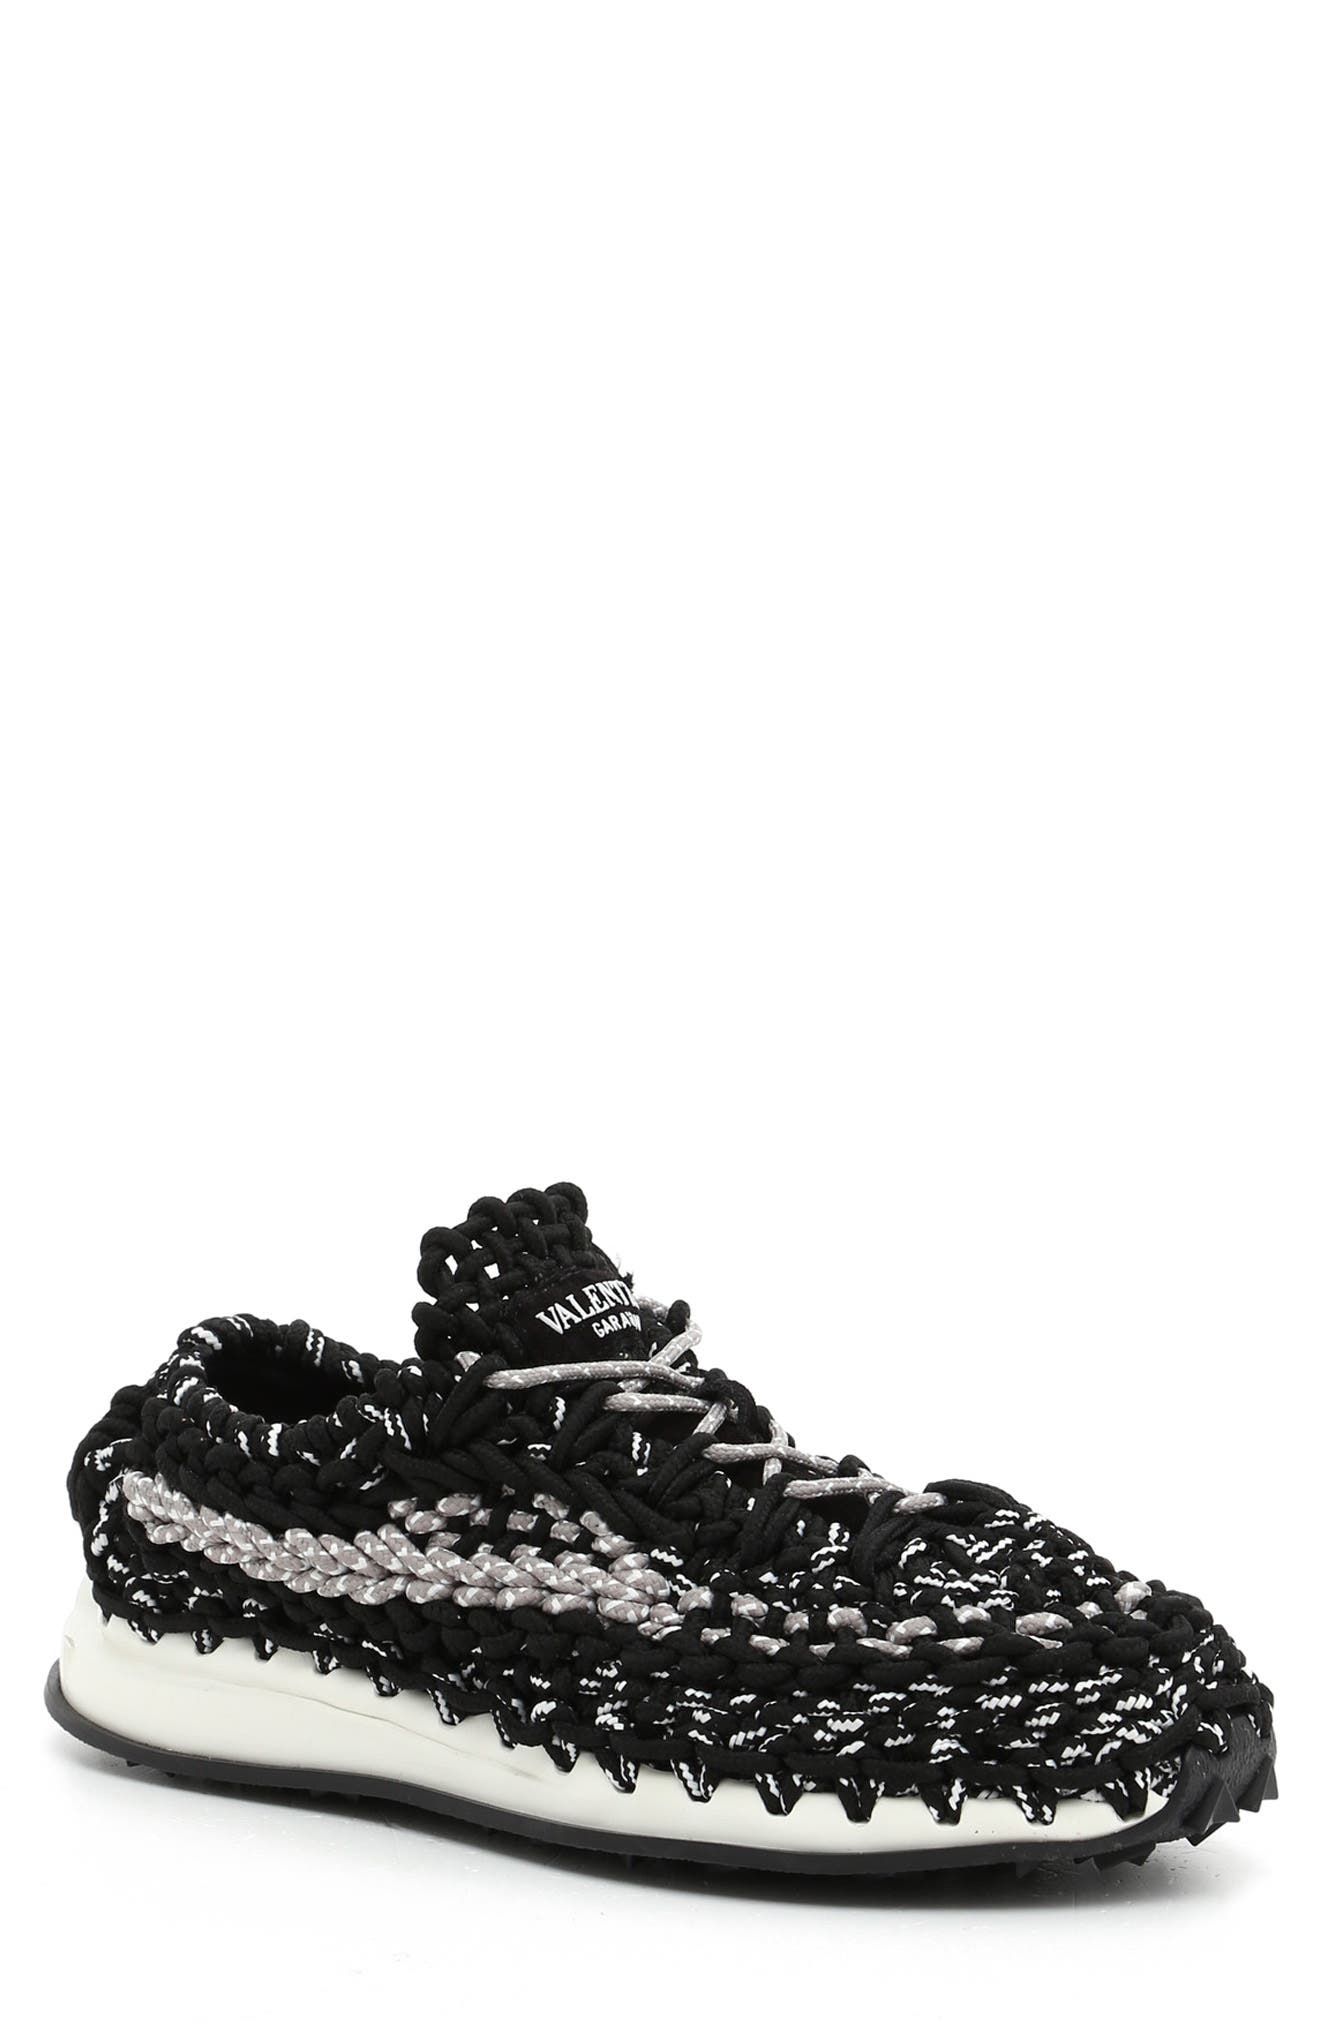 Valentino Crochet Sneaker in Black/White at Nordstrom, Size 12Us